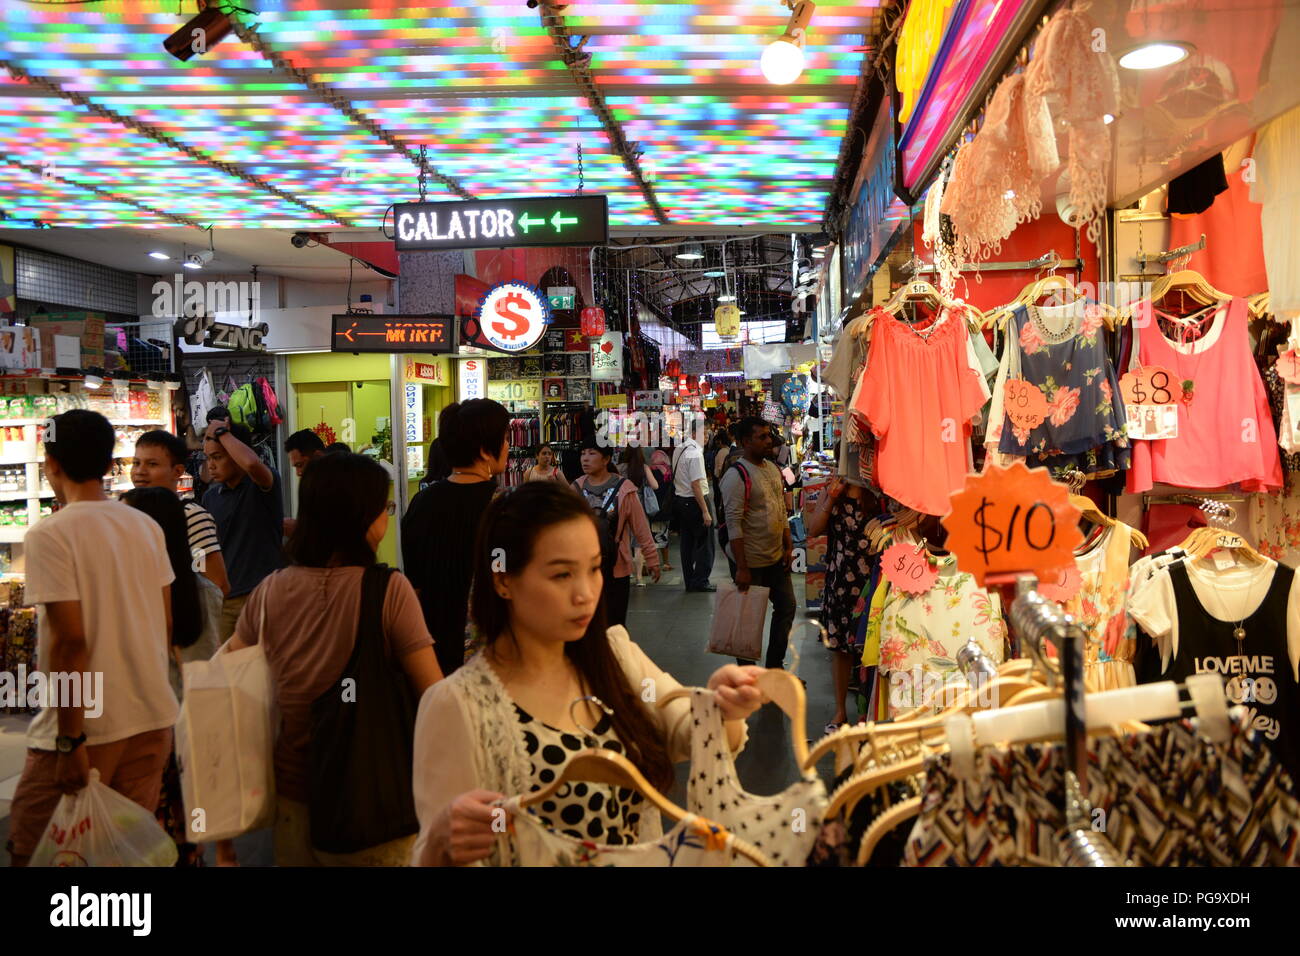 Une femme boutiques pour une robe sur le marché. Populaire avec les habitants et les touristes, Bugis Street Market est bien connu pour être l'un des endroits les moins chers à Singapour pour acheter des souvenirs, d'accessoires, vêtements, appareils électroniques, articles ménagers et des produits cosmétiques. Banque D'Images